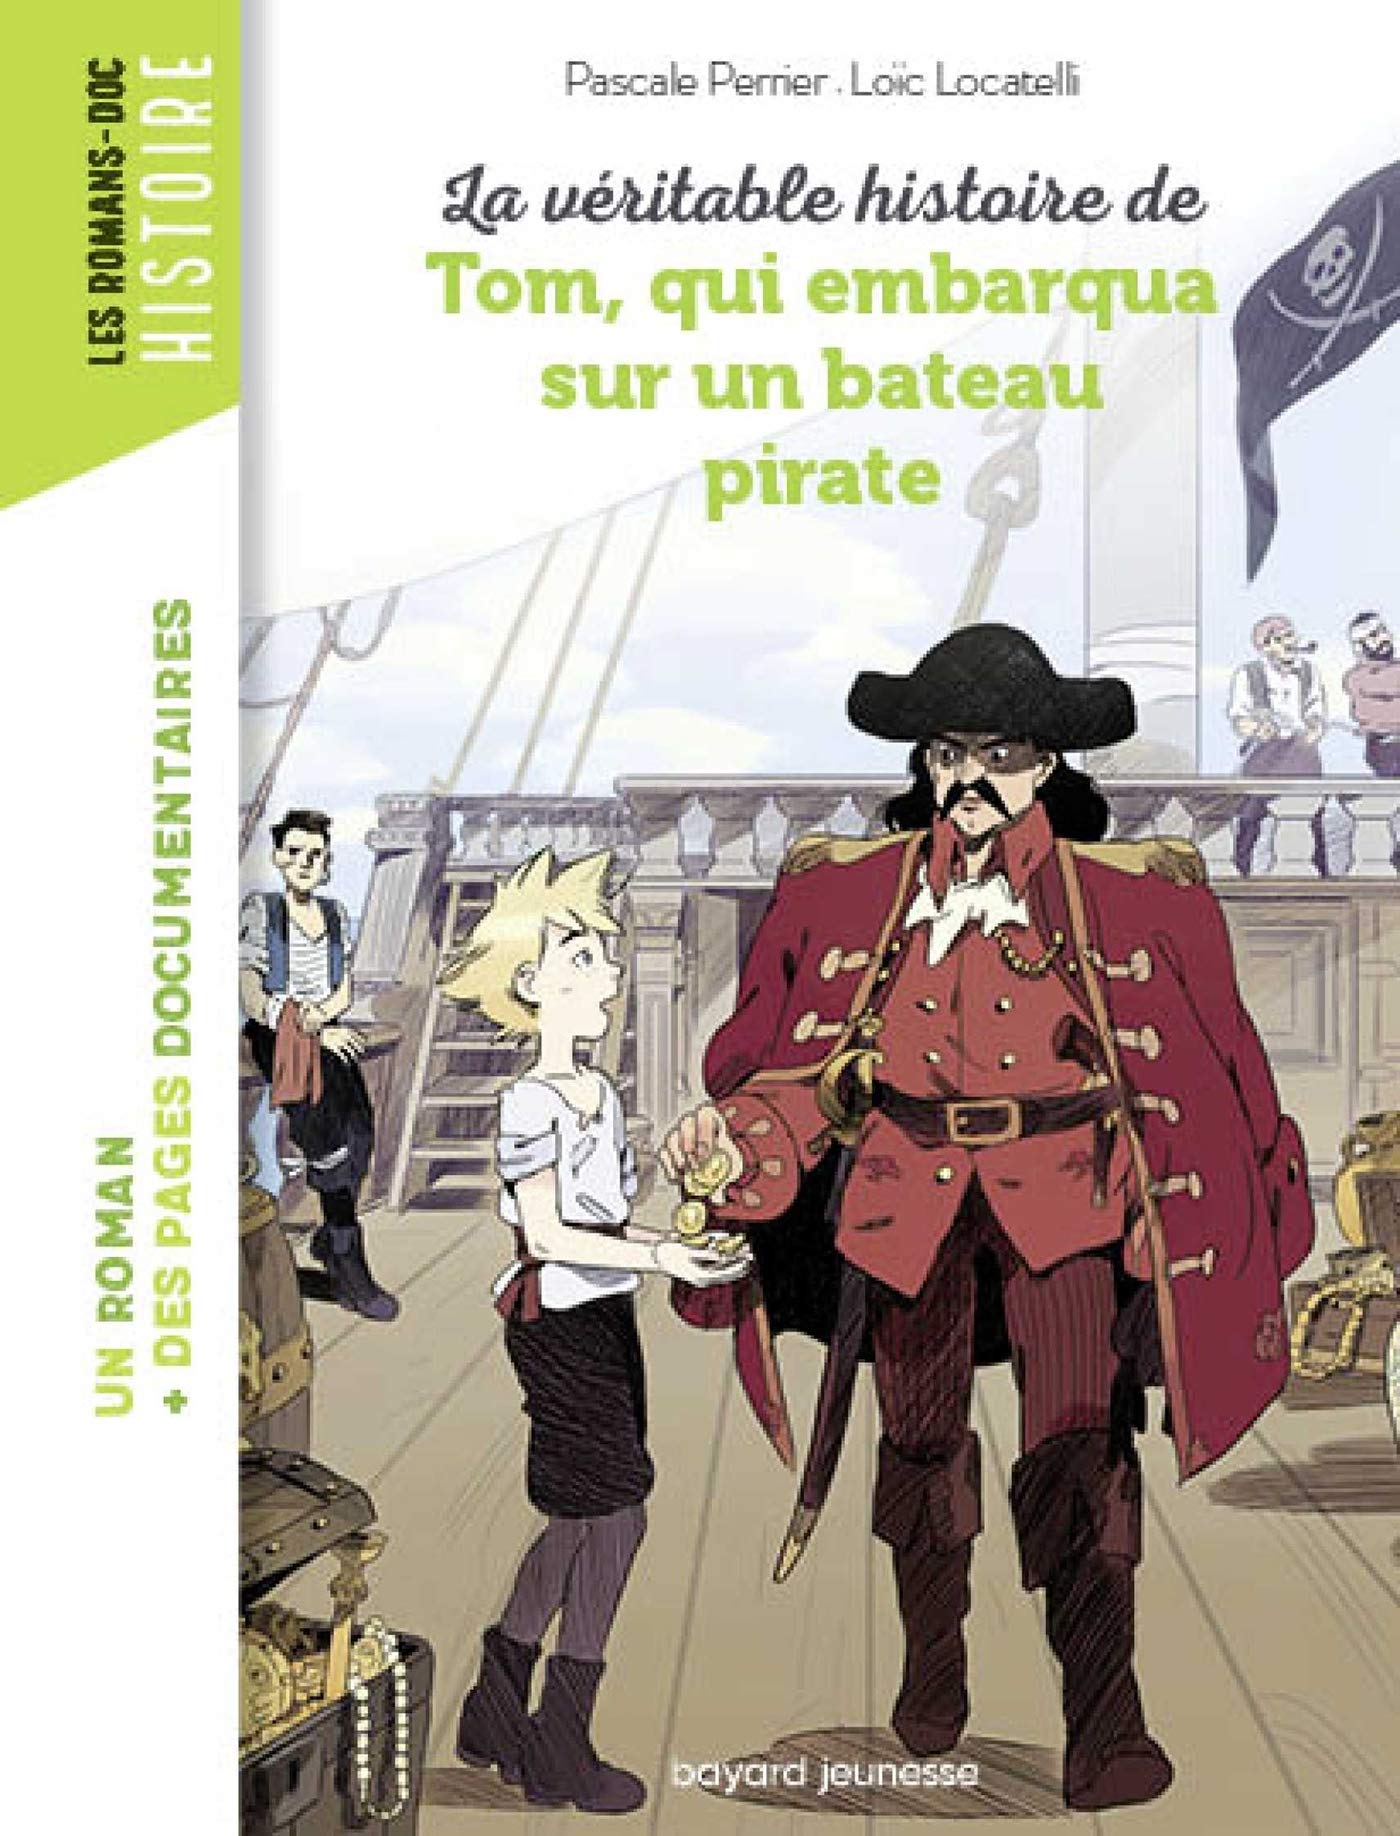 La veritable histoire de tom qui embarqua avec des pirates